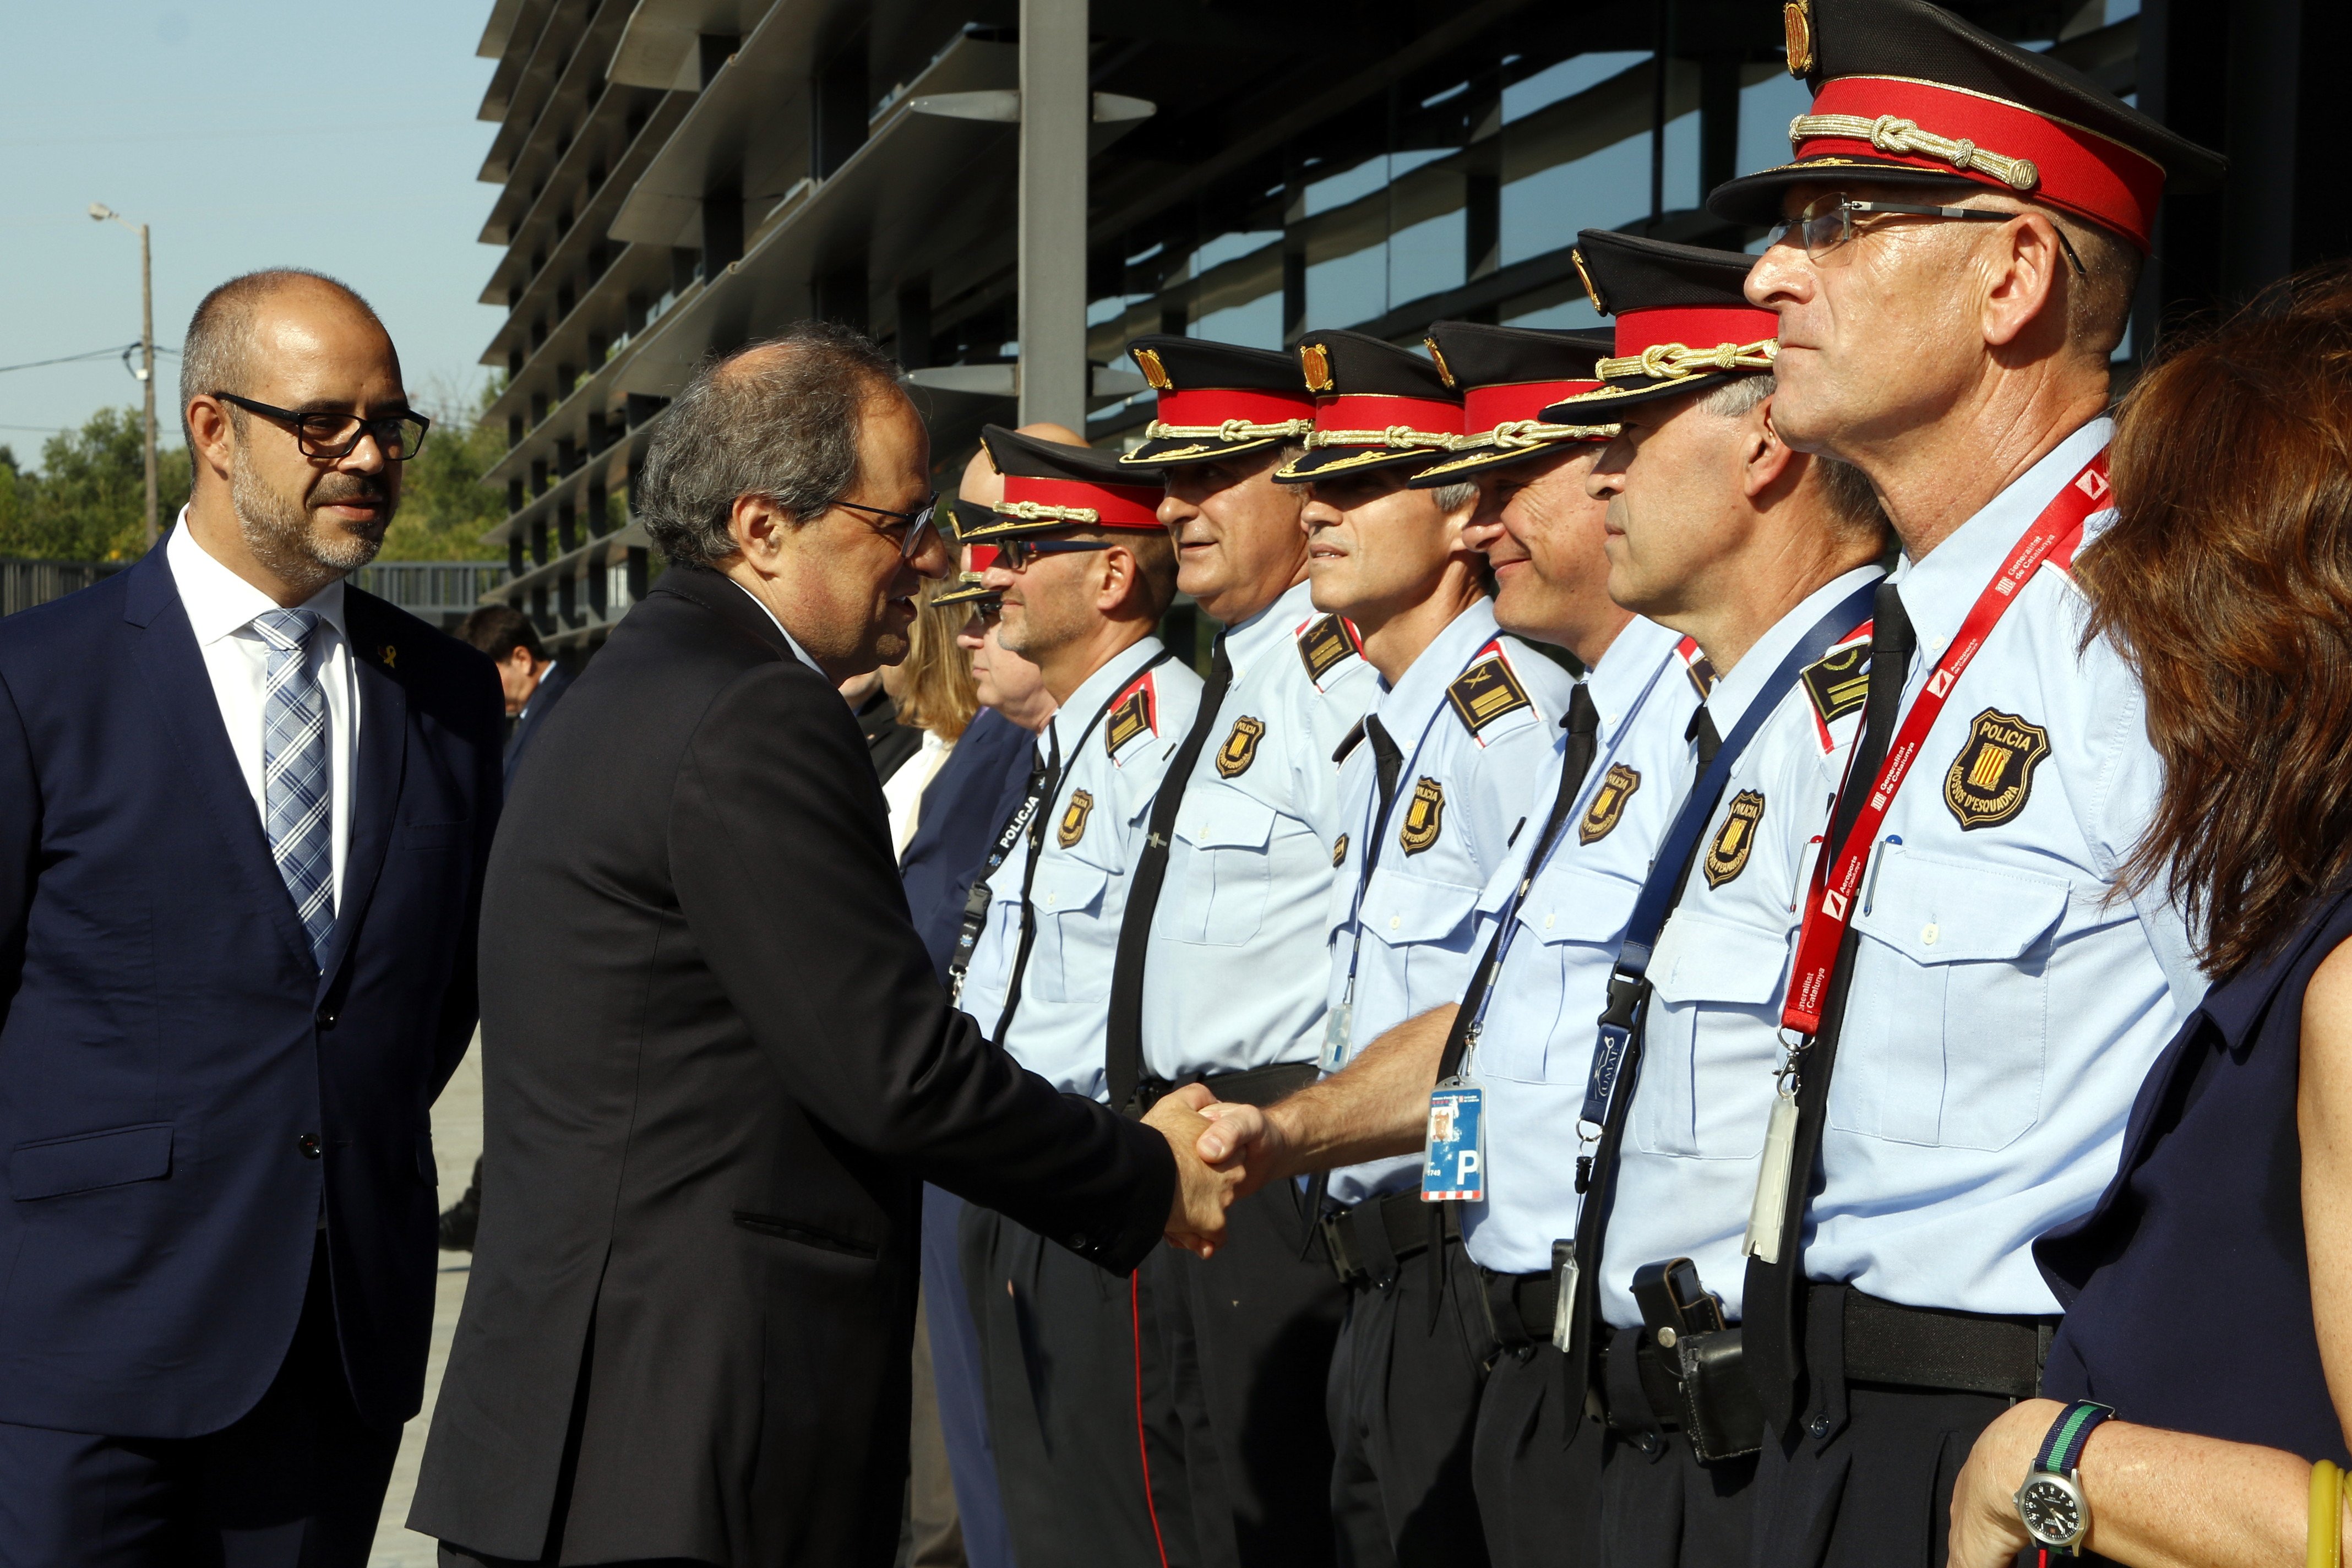 El Ministeri de l'Interior veta que l'escorta dels Mossos acompanyi Torra a Brussel·les